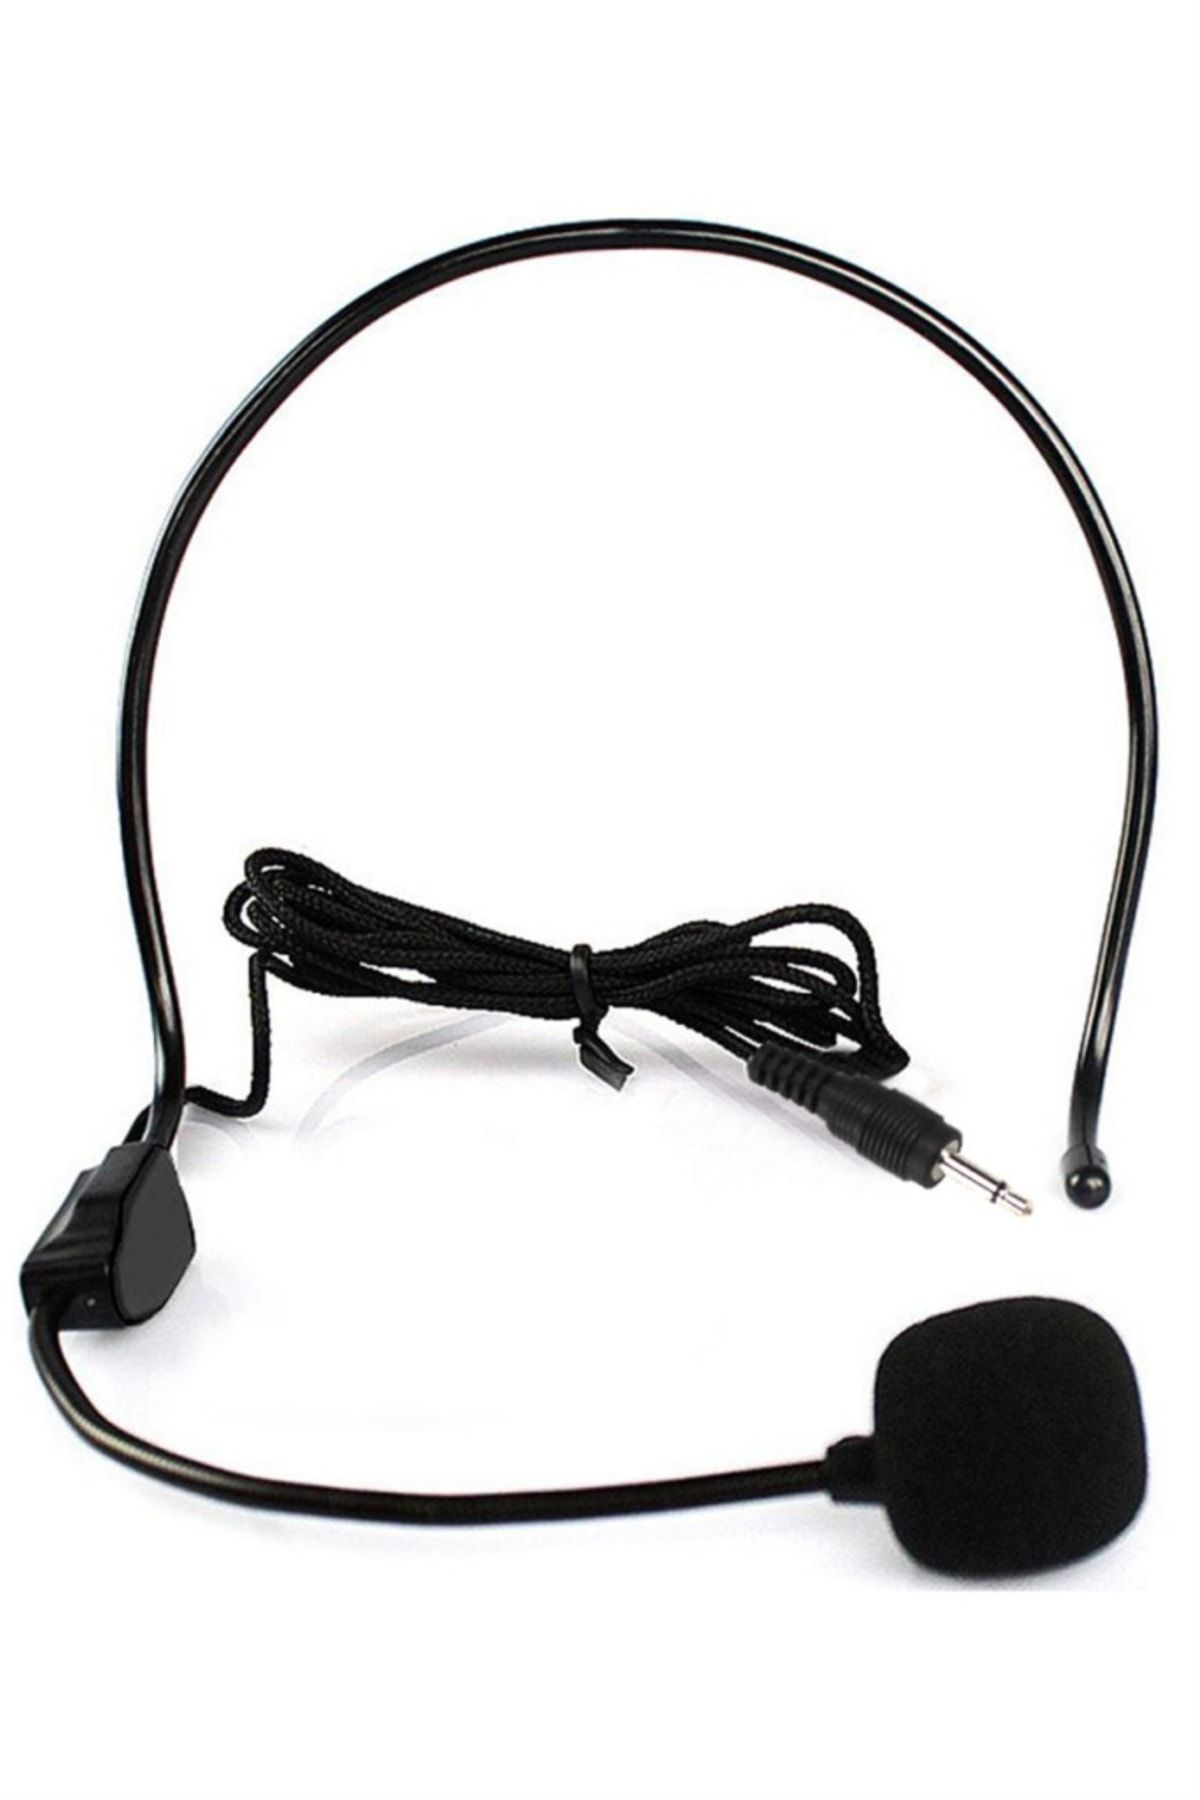 Hepa-Merz Hepa Merz Hd50 Kablolu Headset Mikrofon 3.5mm Jack Girişli